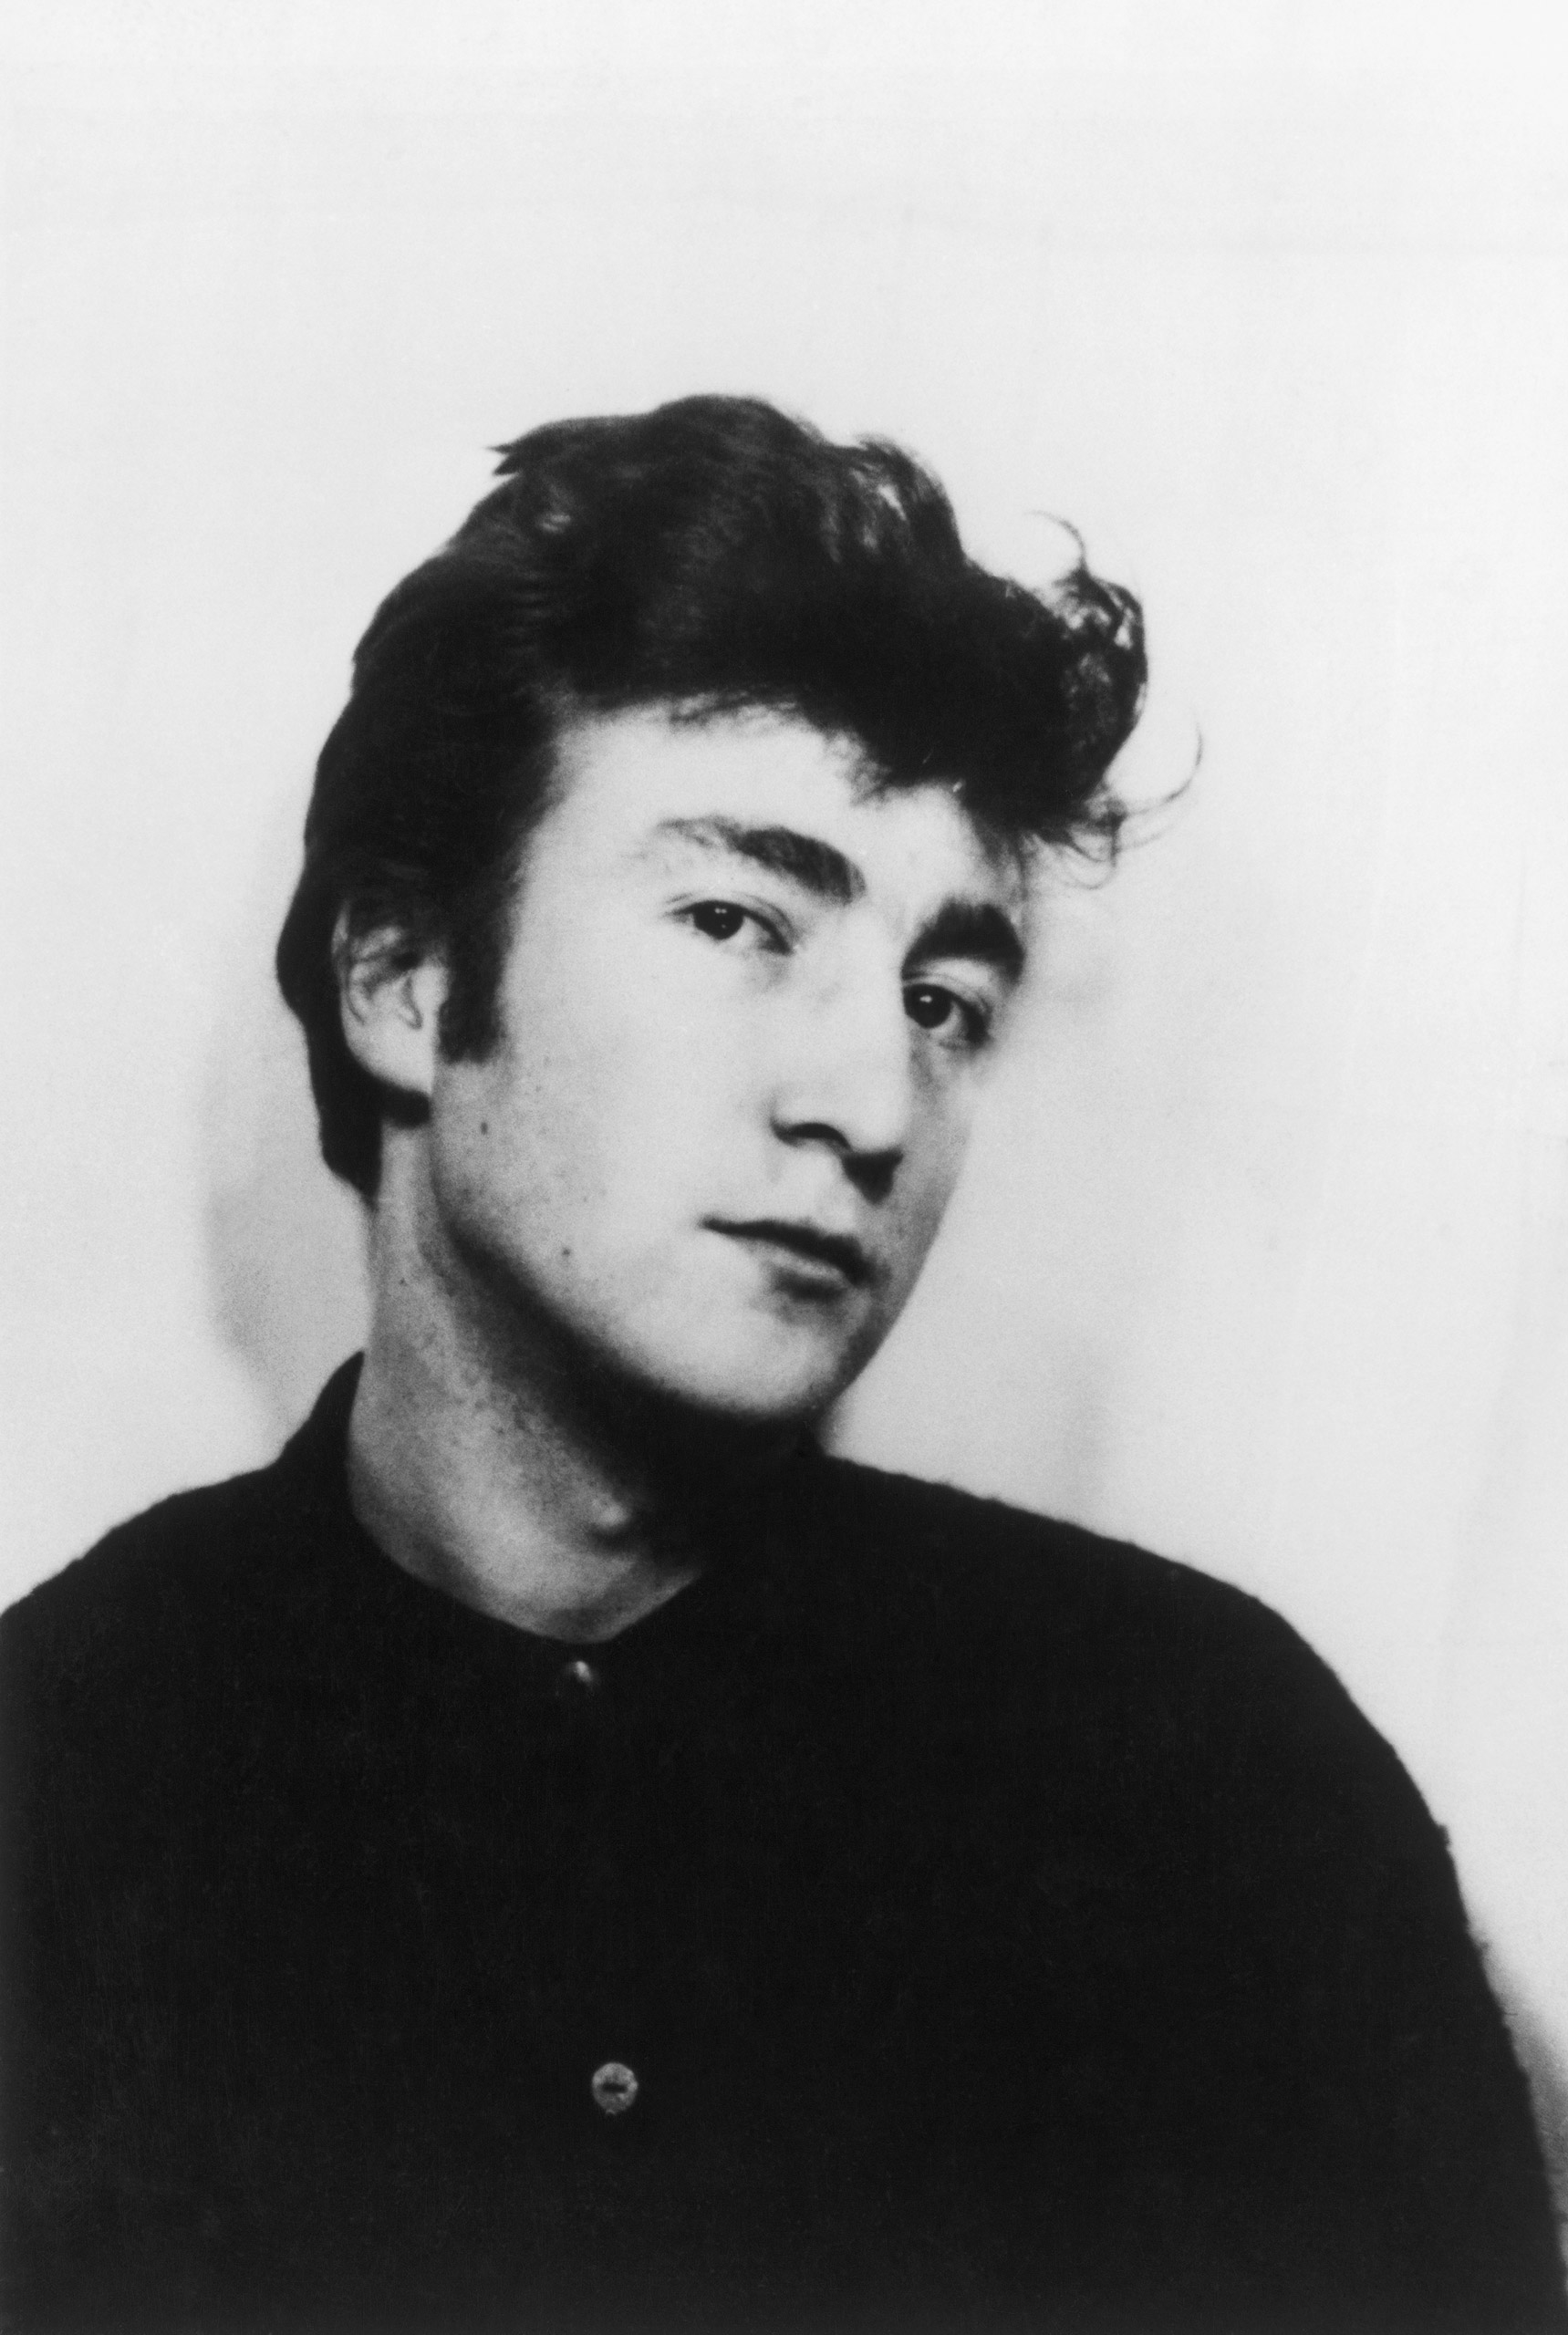 John Lennon, Pre-Beatles, circa 1960/1961.